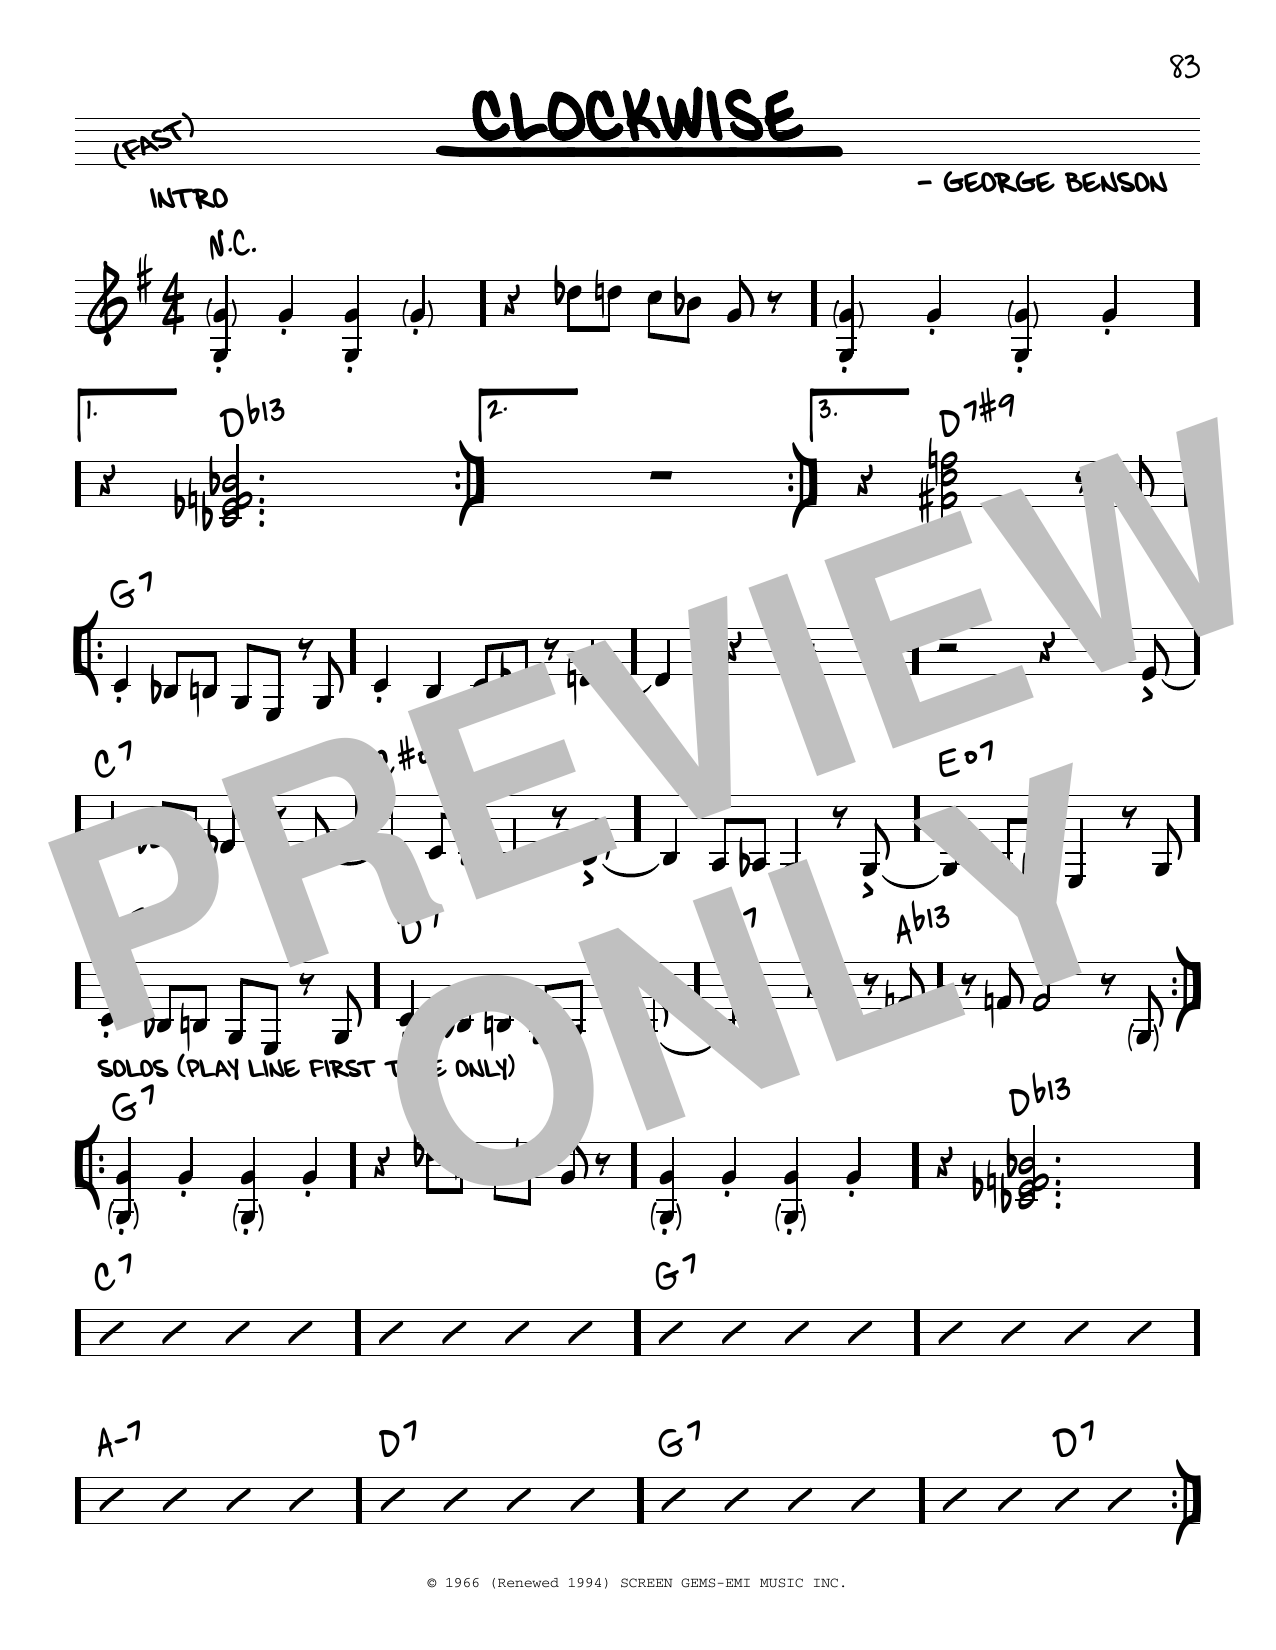 Download George Benson Clockwise Sheet Music